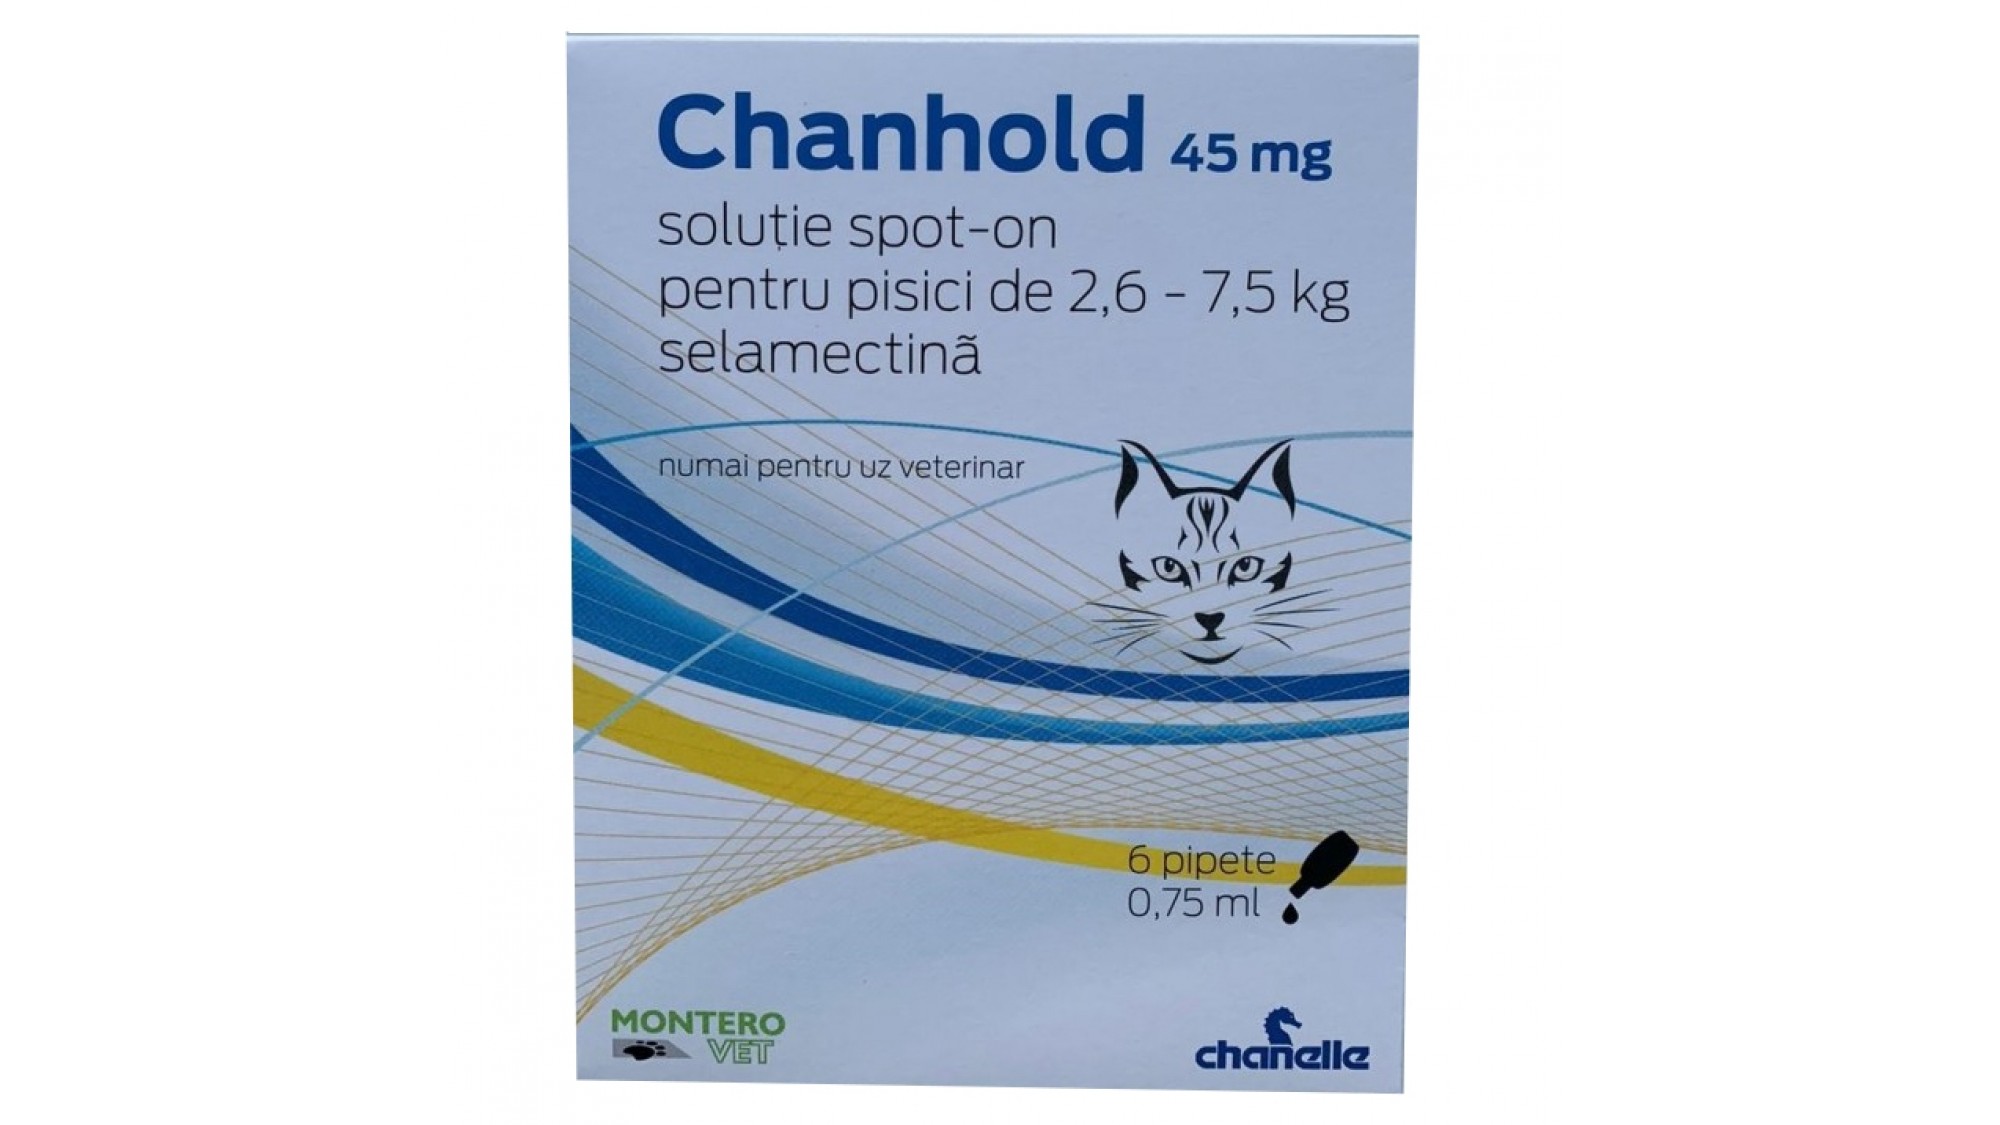 Pipetă antiparazitară Chanhold 45 mg pentru pisici între 2,6 – 7,5 kg Chanelle